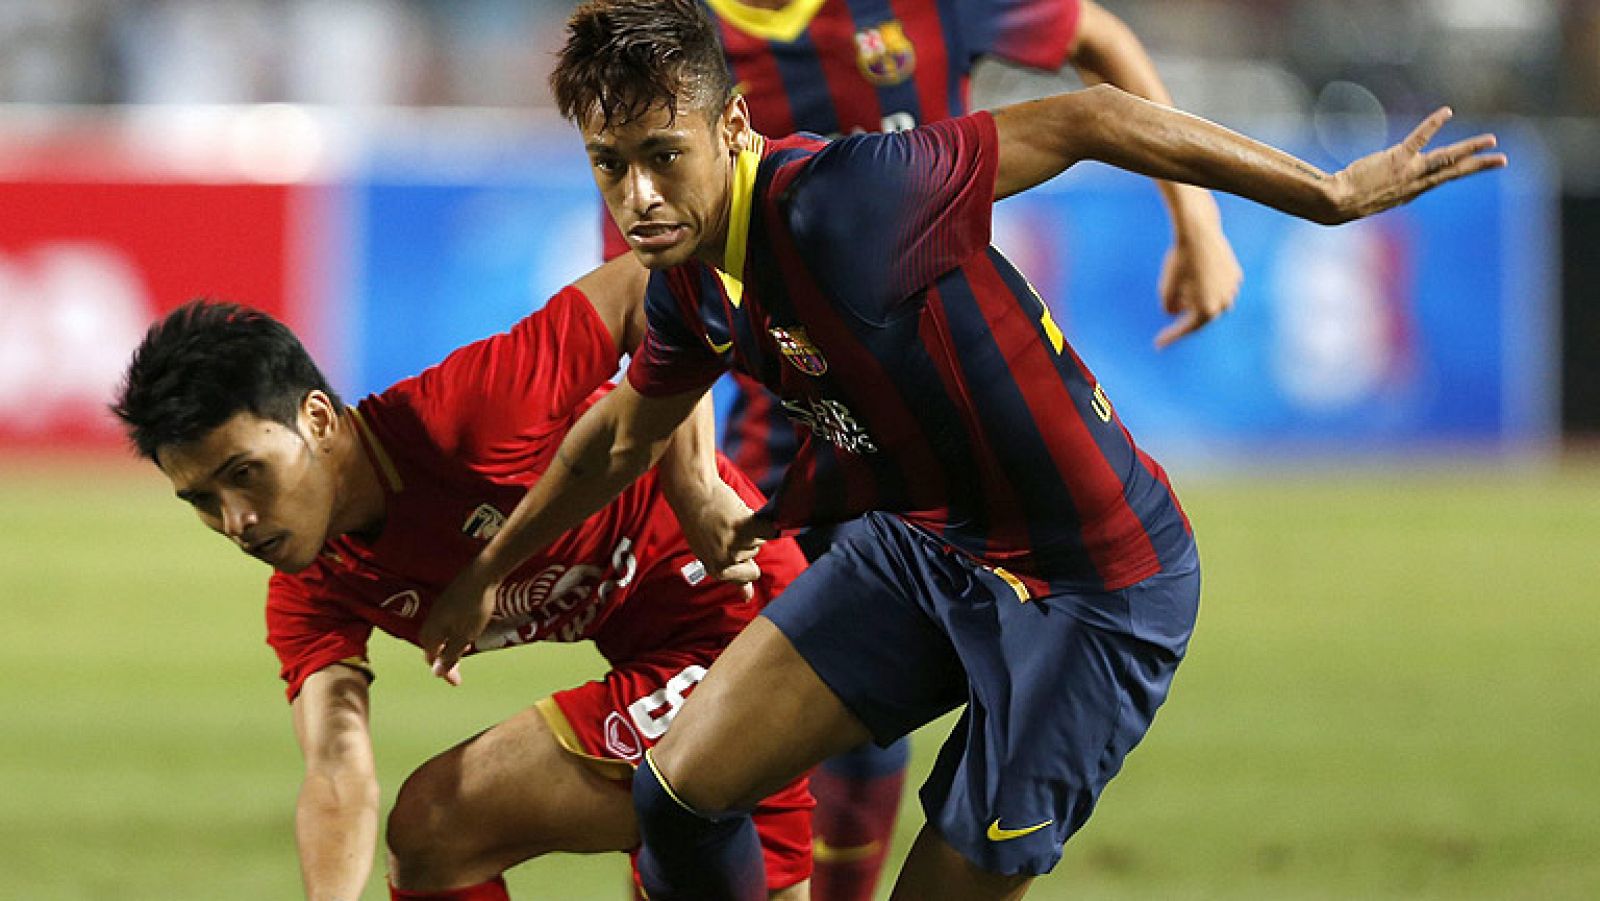 El nuevo jugador del Barcelona, Neymar Jr, ha estrenado su cuenta goleadora como azulgrana con un tanto en el amistoso del Barça contra Tailandia, en el que se ha impuesto el equipo español por 7-1.